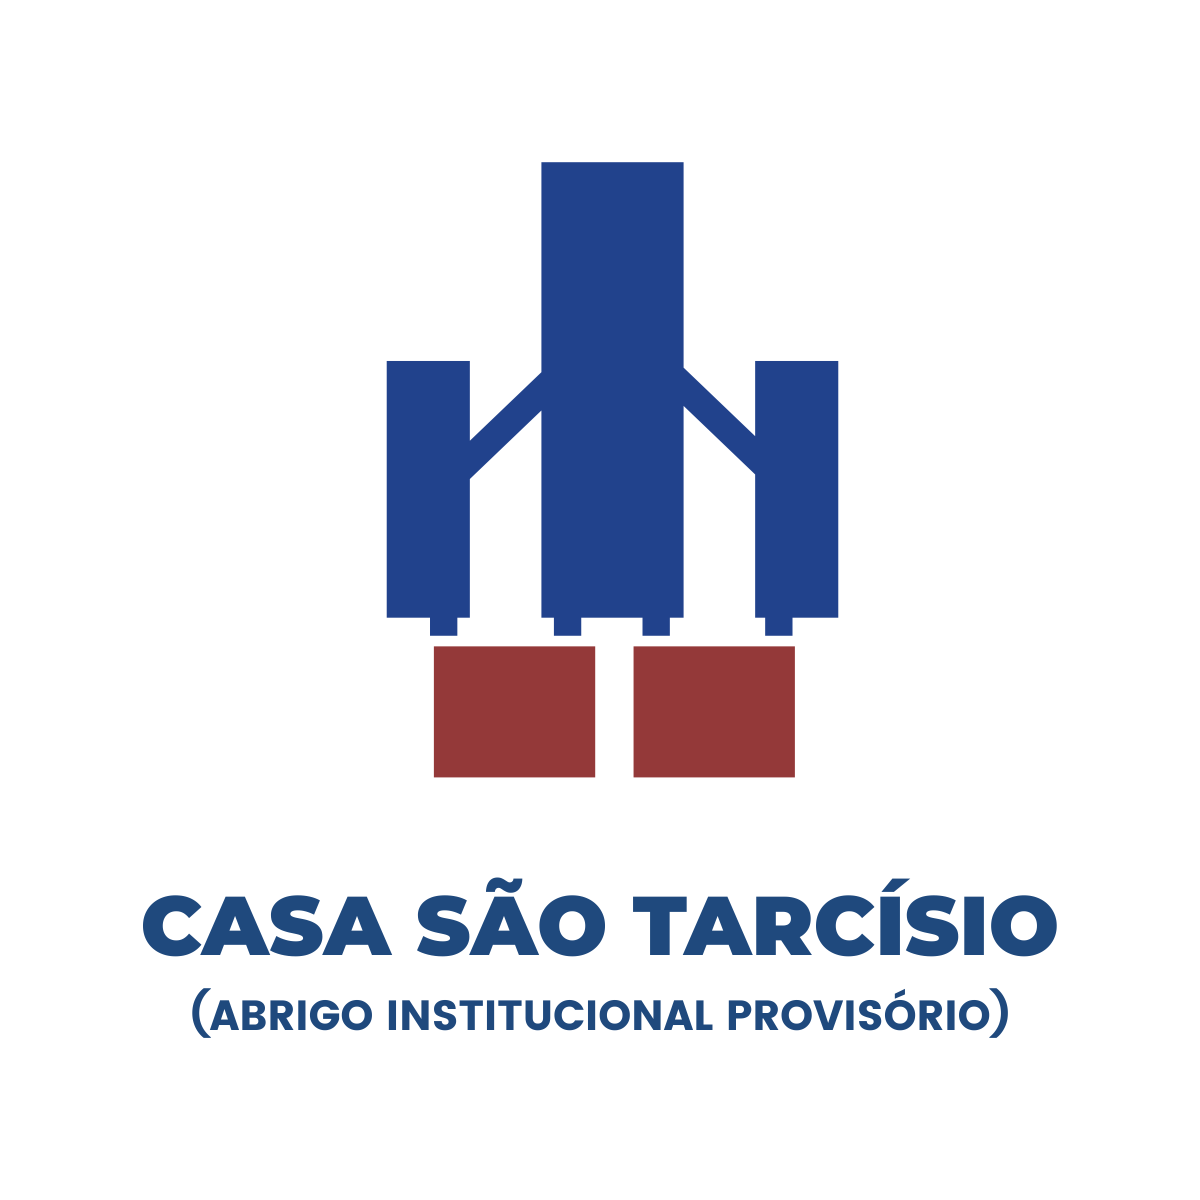 Casa São Tarcísio - Abrigo Institucional Provisório